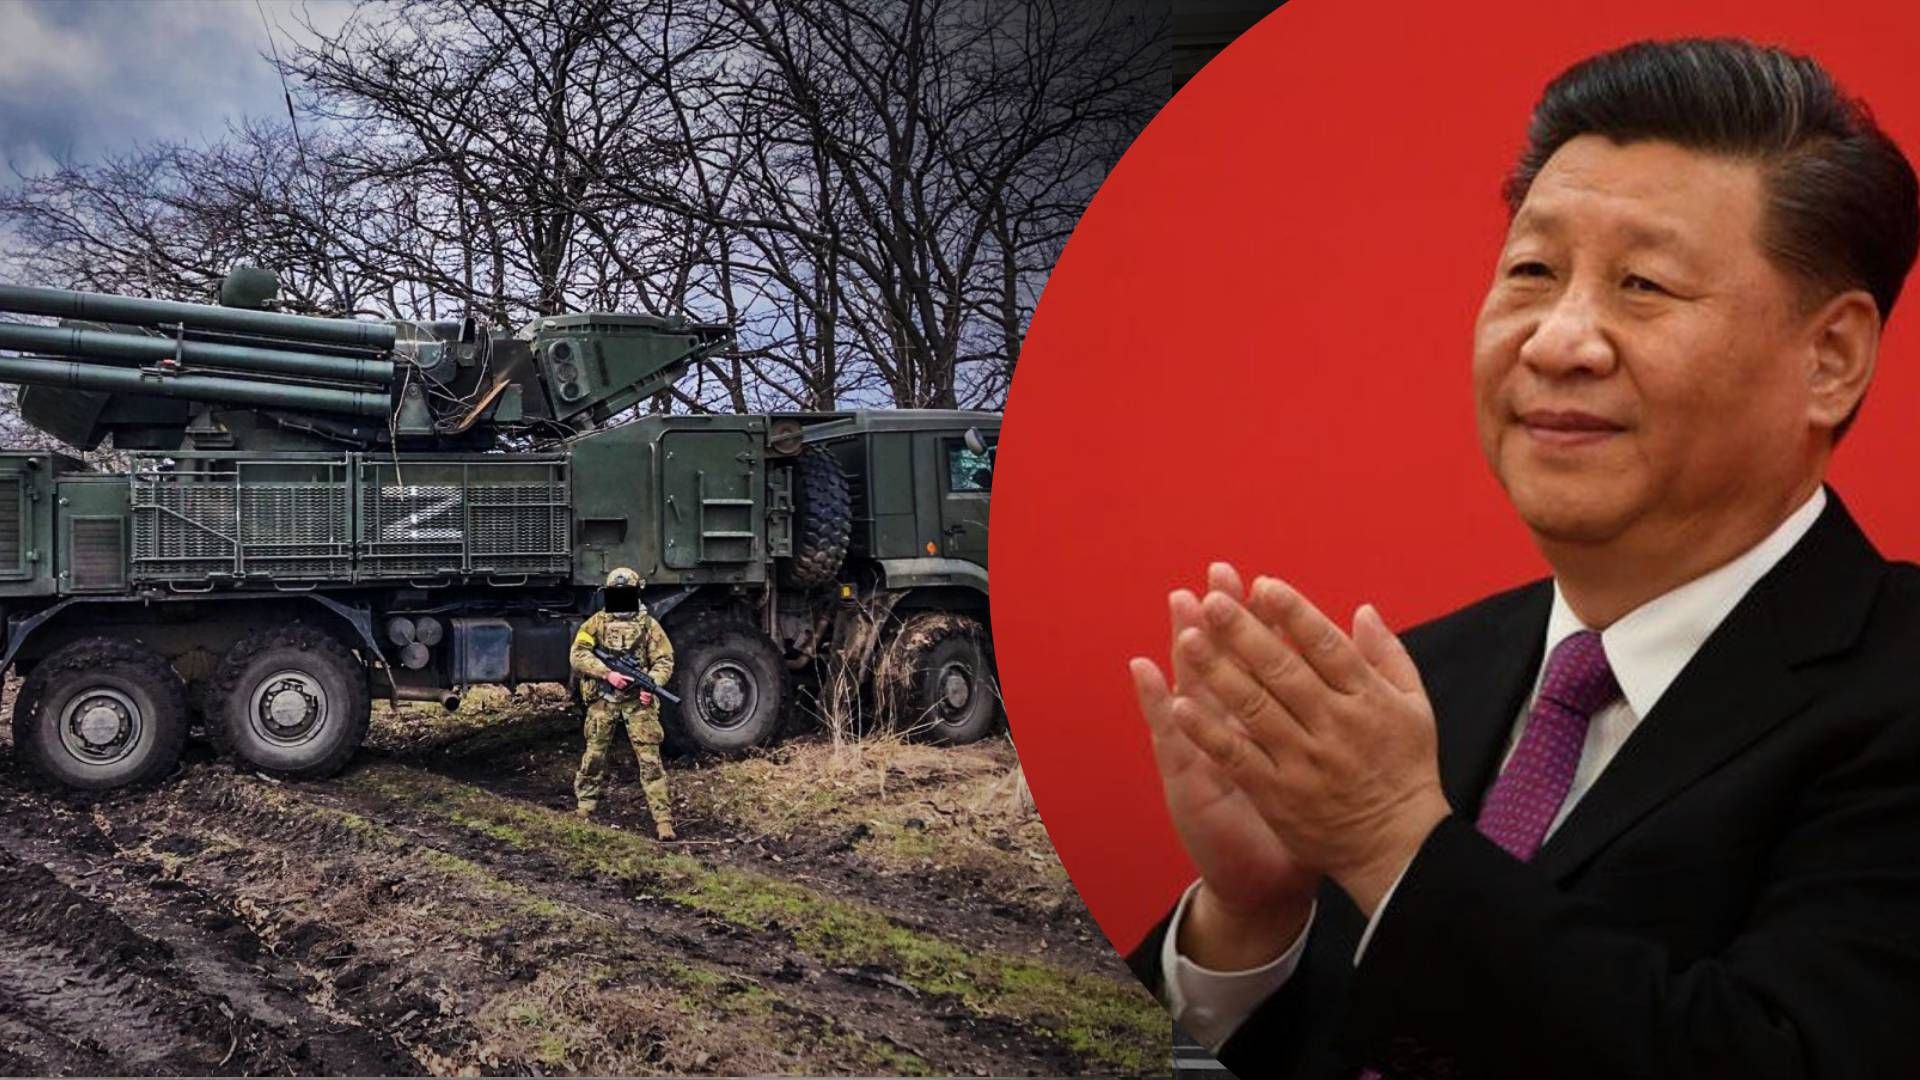 Китай учится у Украины воевать - когда будет нападение на Тайвань